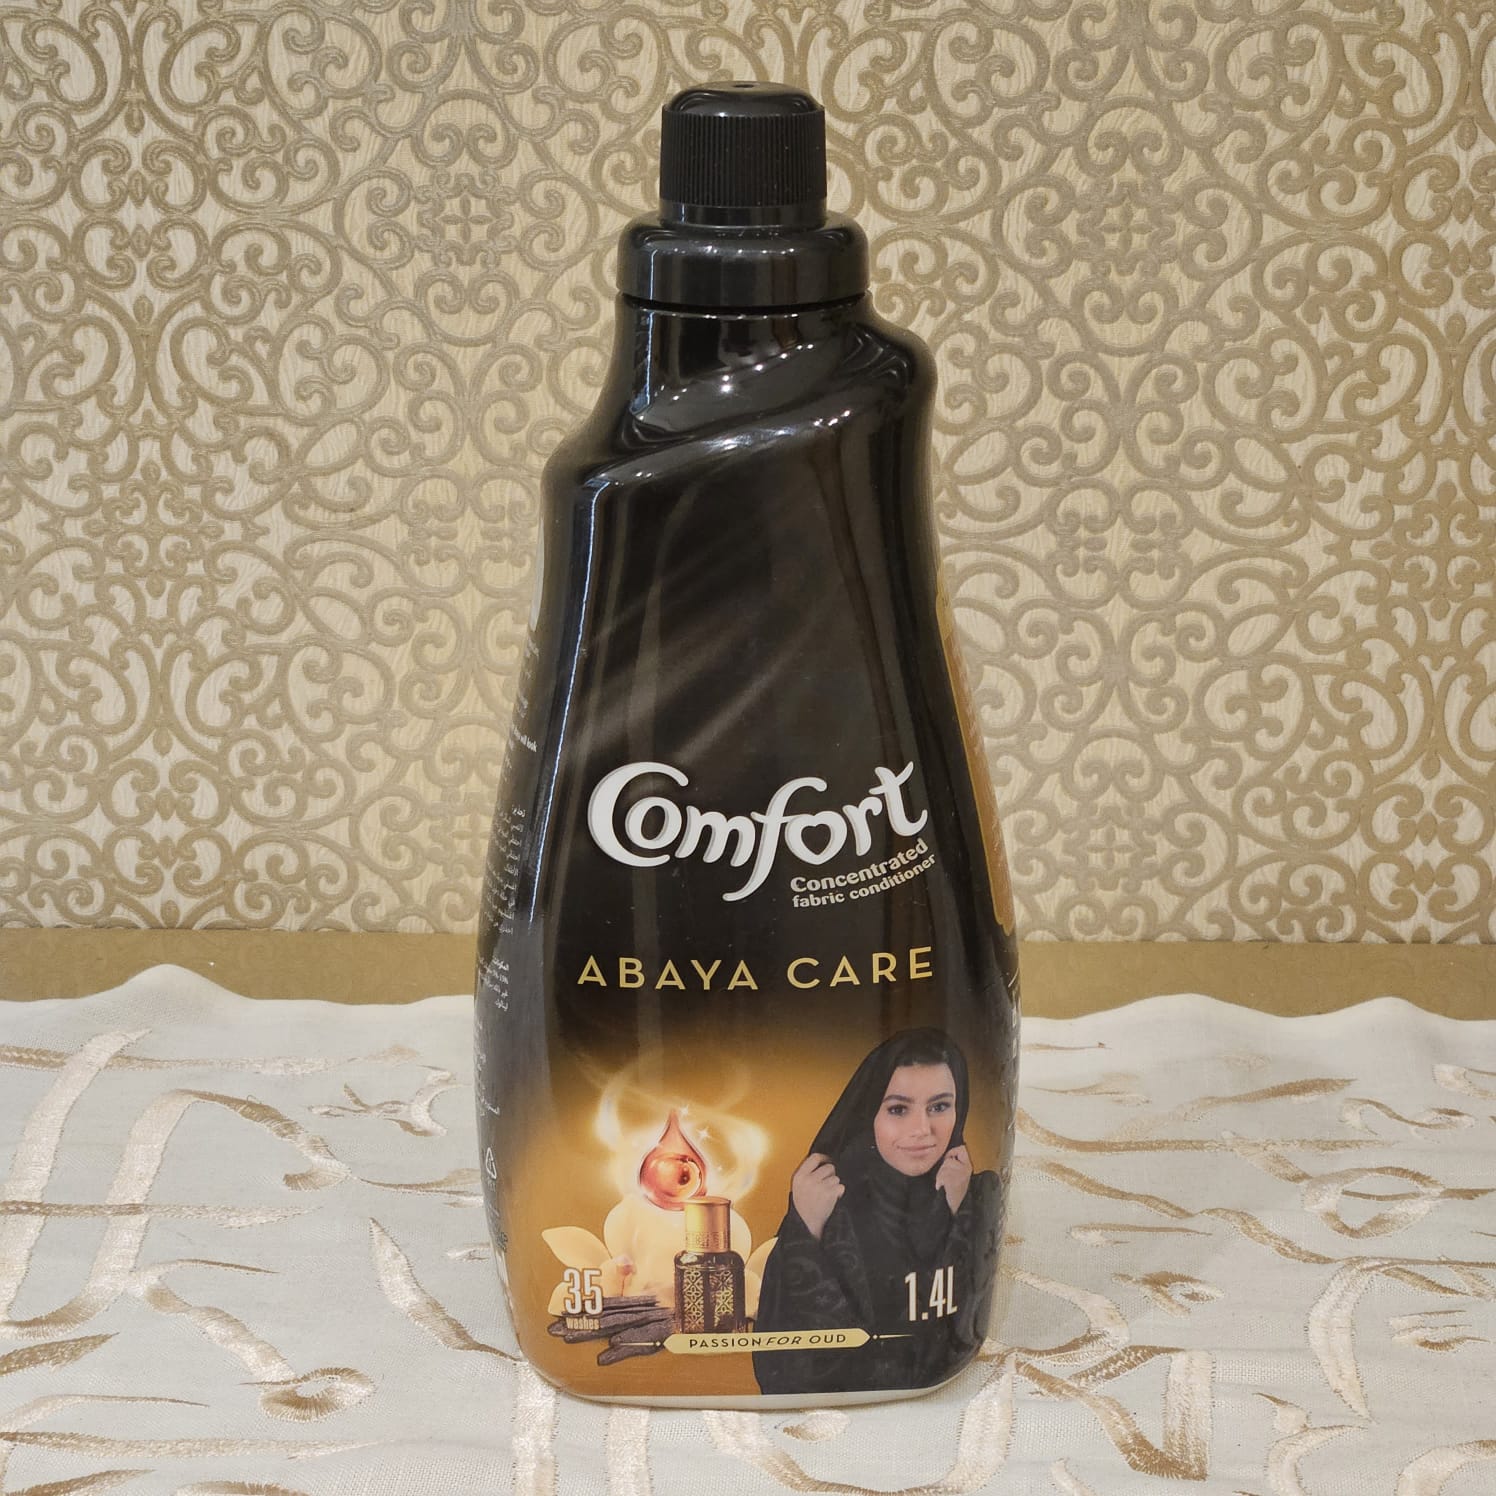 I-Comfort Oud Abaya Fabric Softener 1.4L 